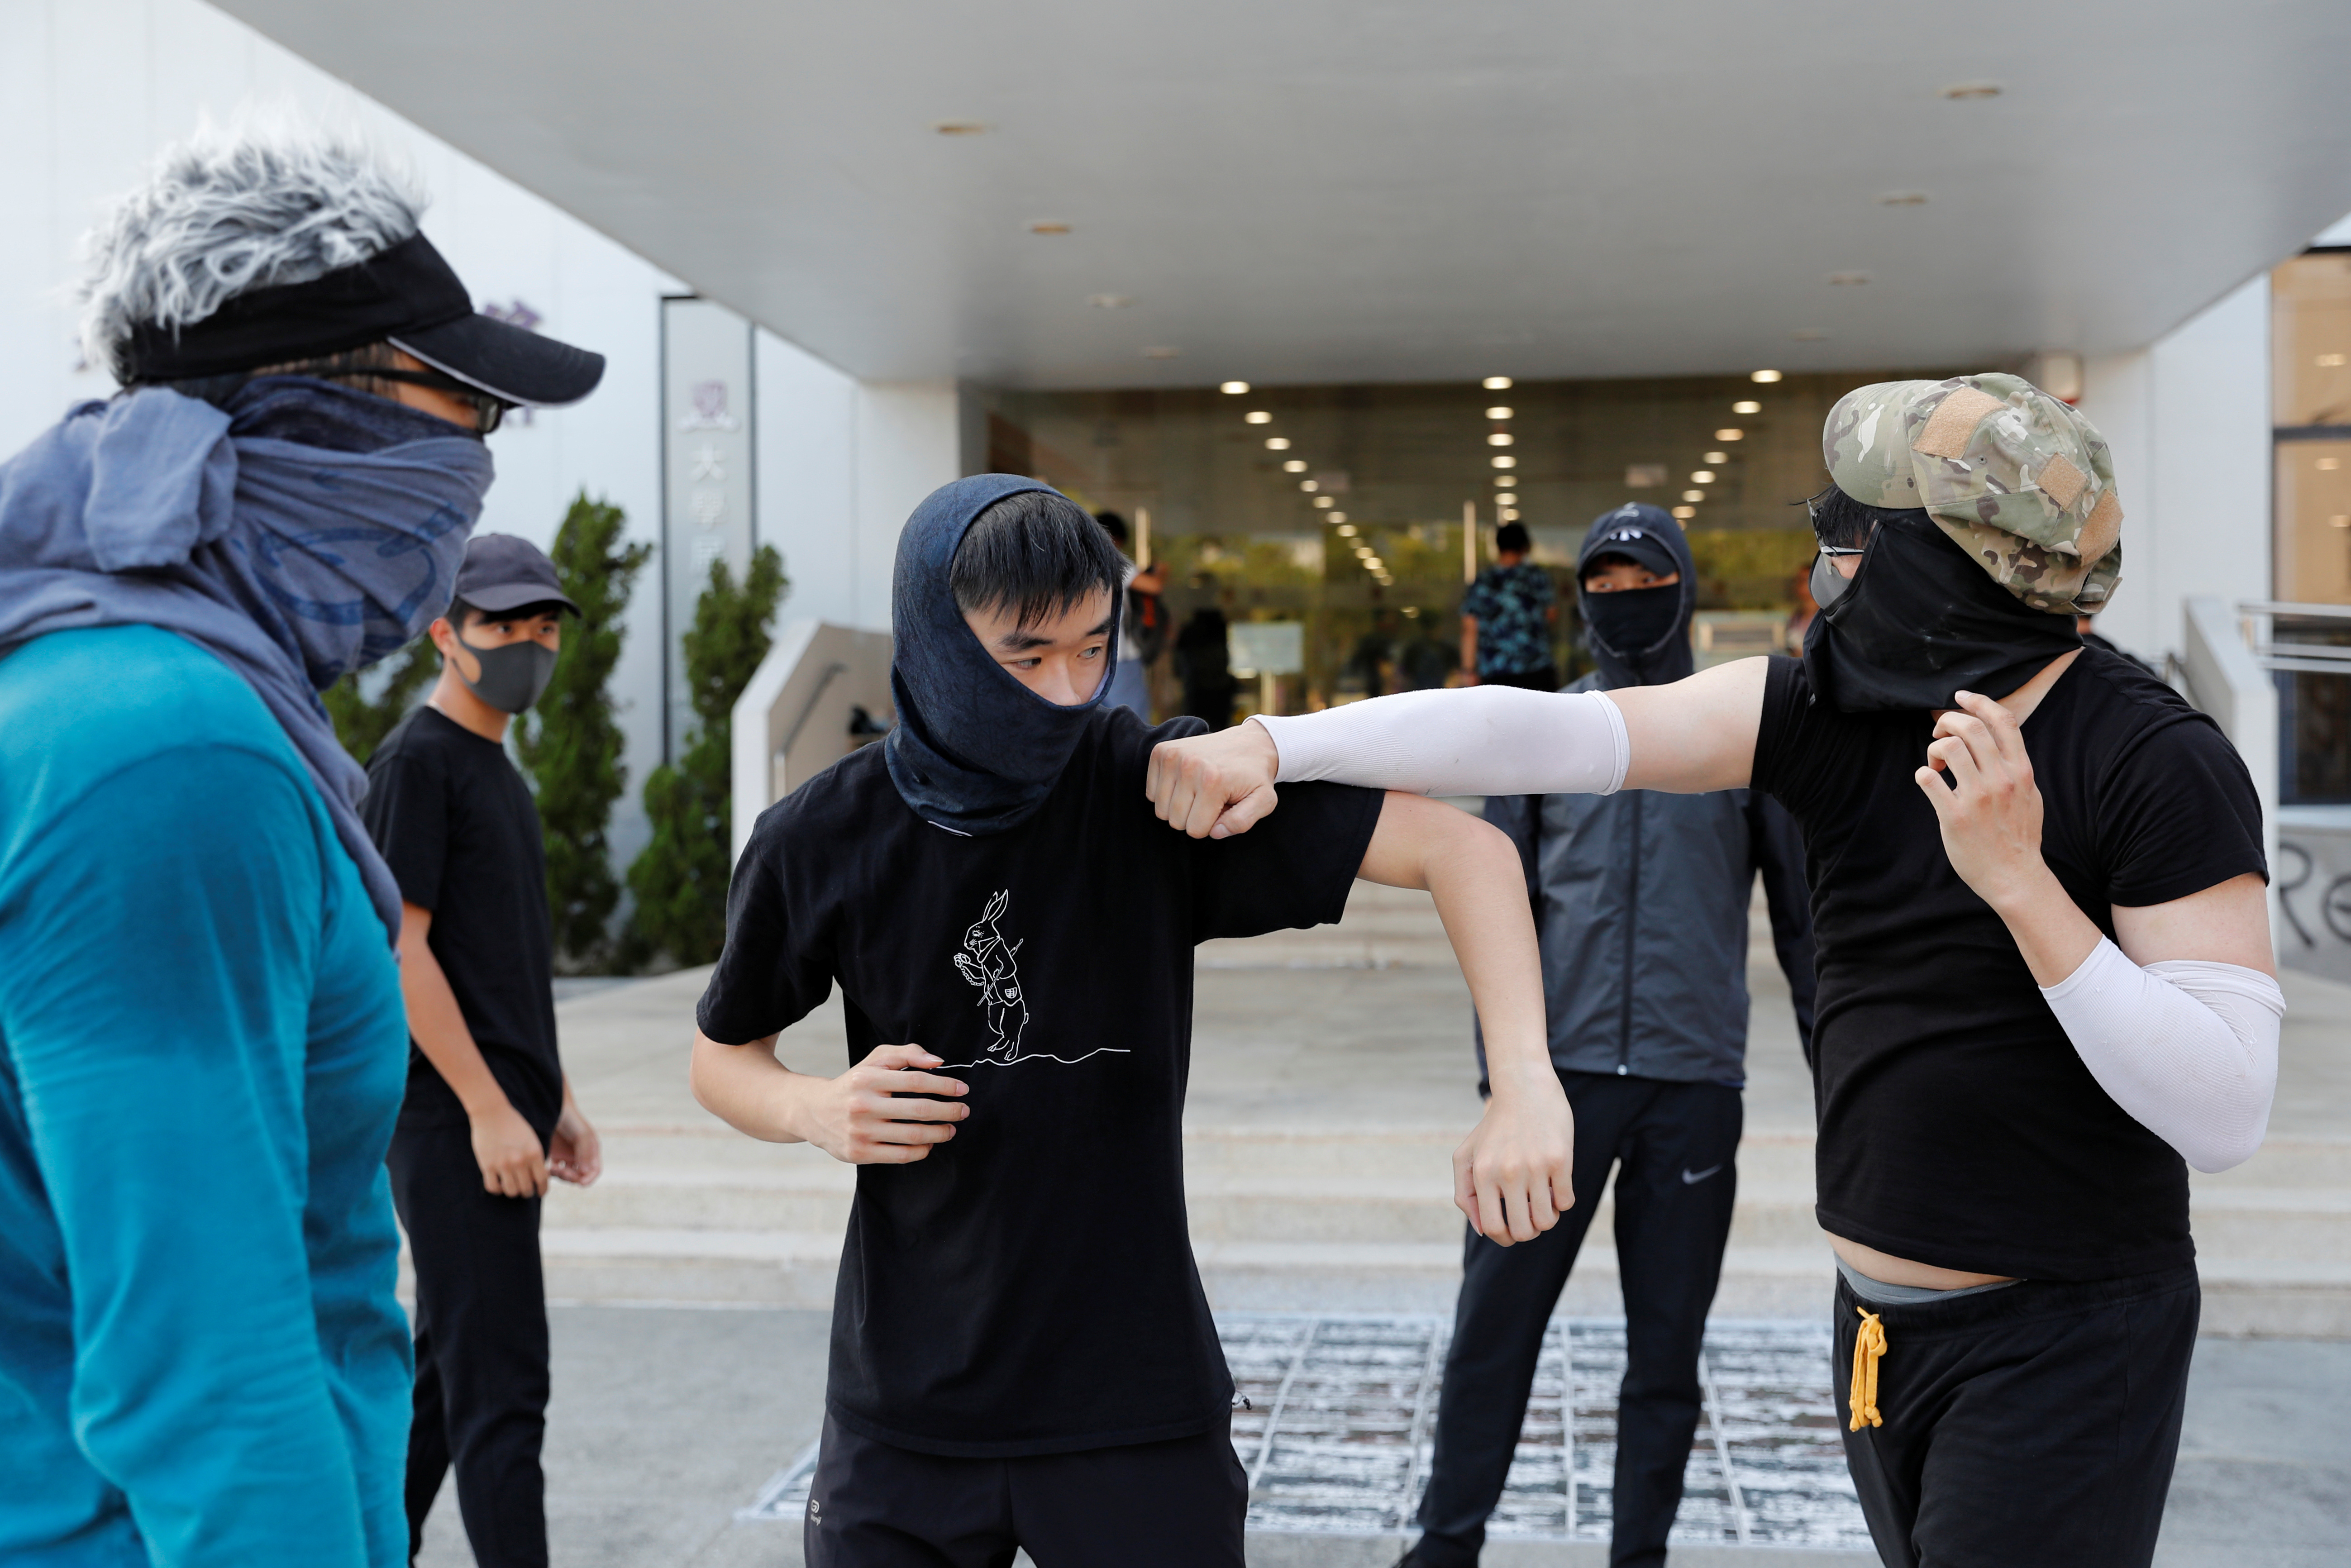 香港中文大学学生开设“自卫班”，教导学员如何对抗警察、躲避拘捕等技巧。-路透社-